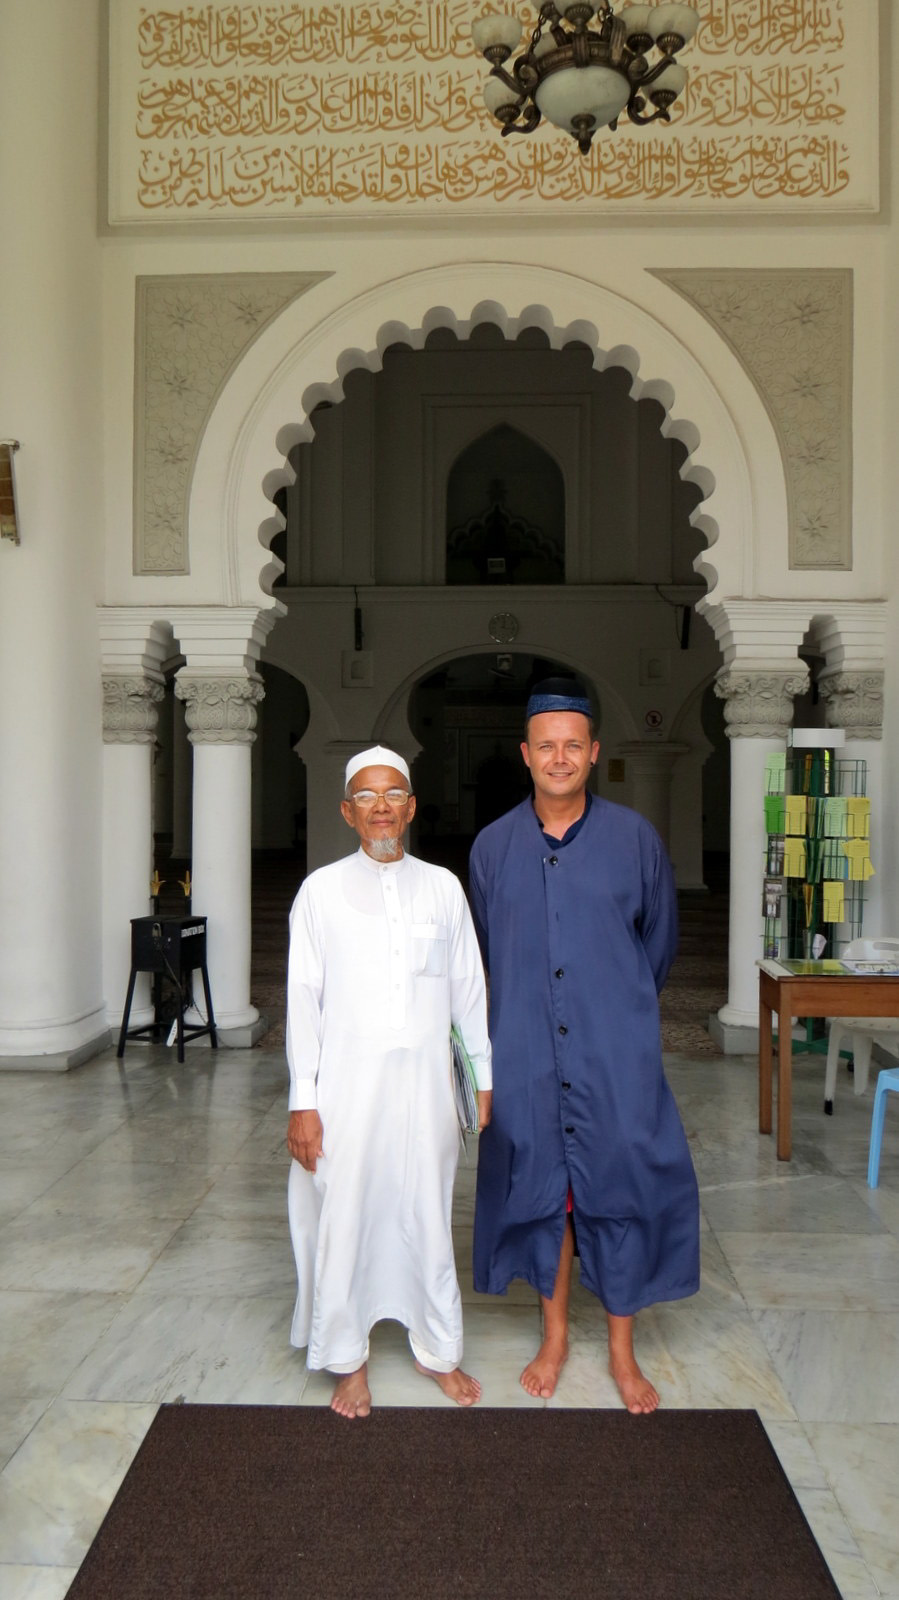 john-with-imam-kapitan-keling-penang